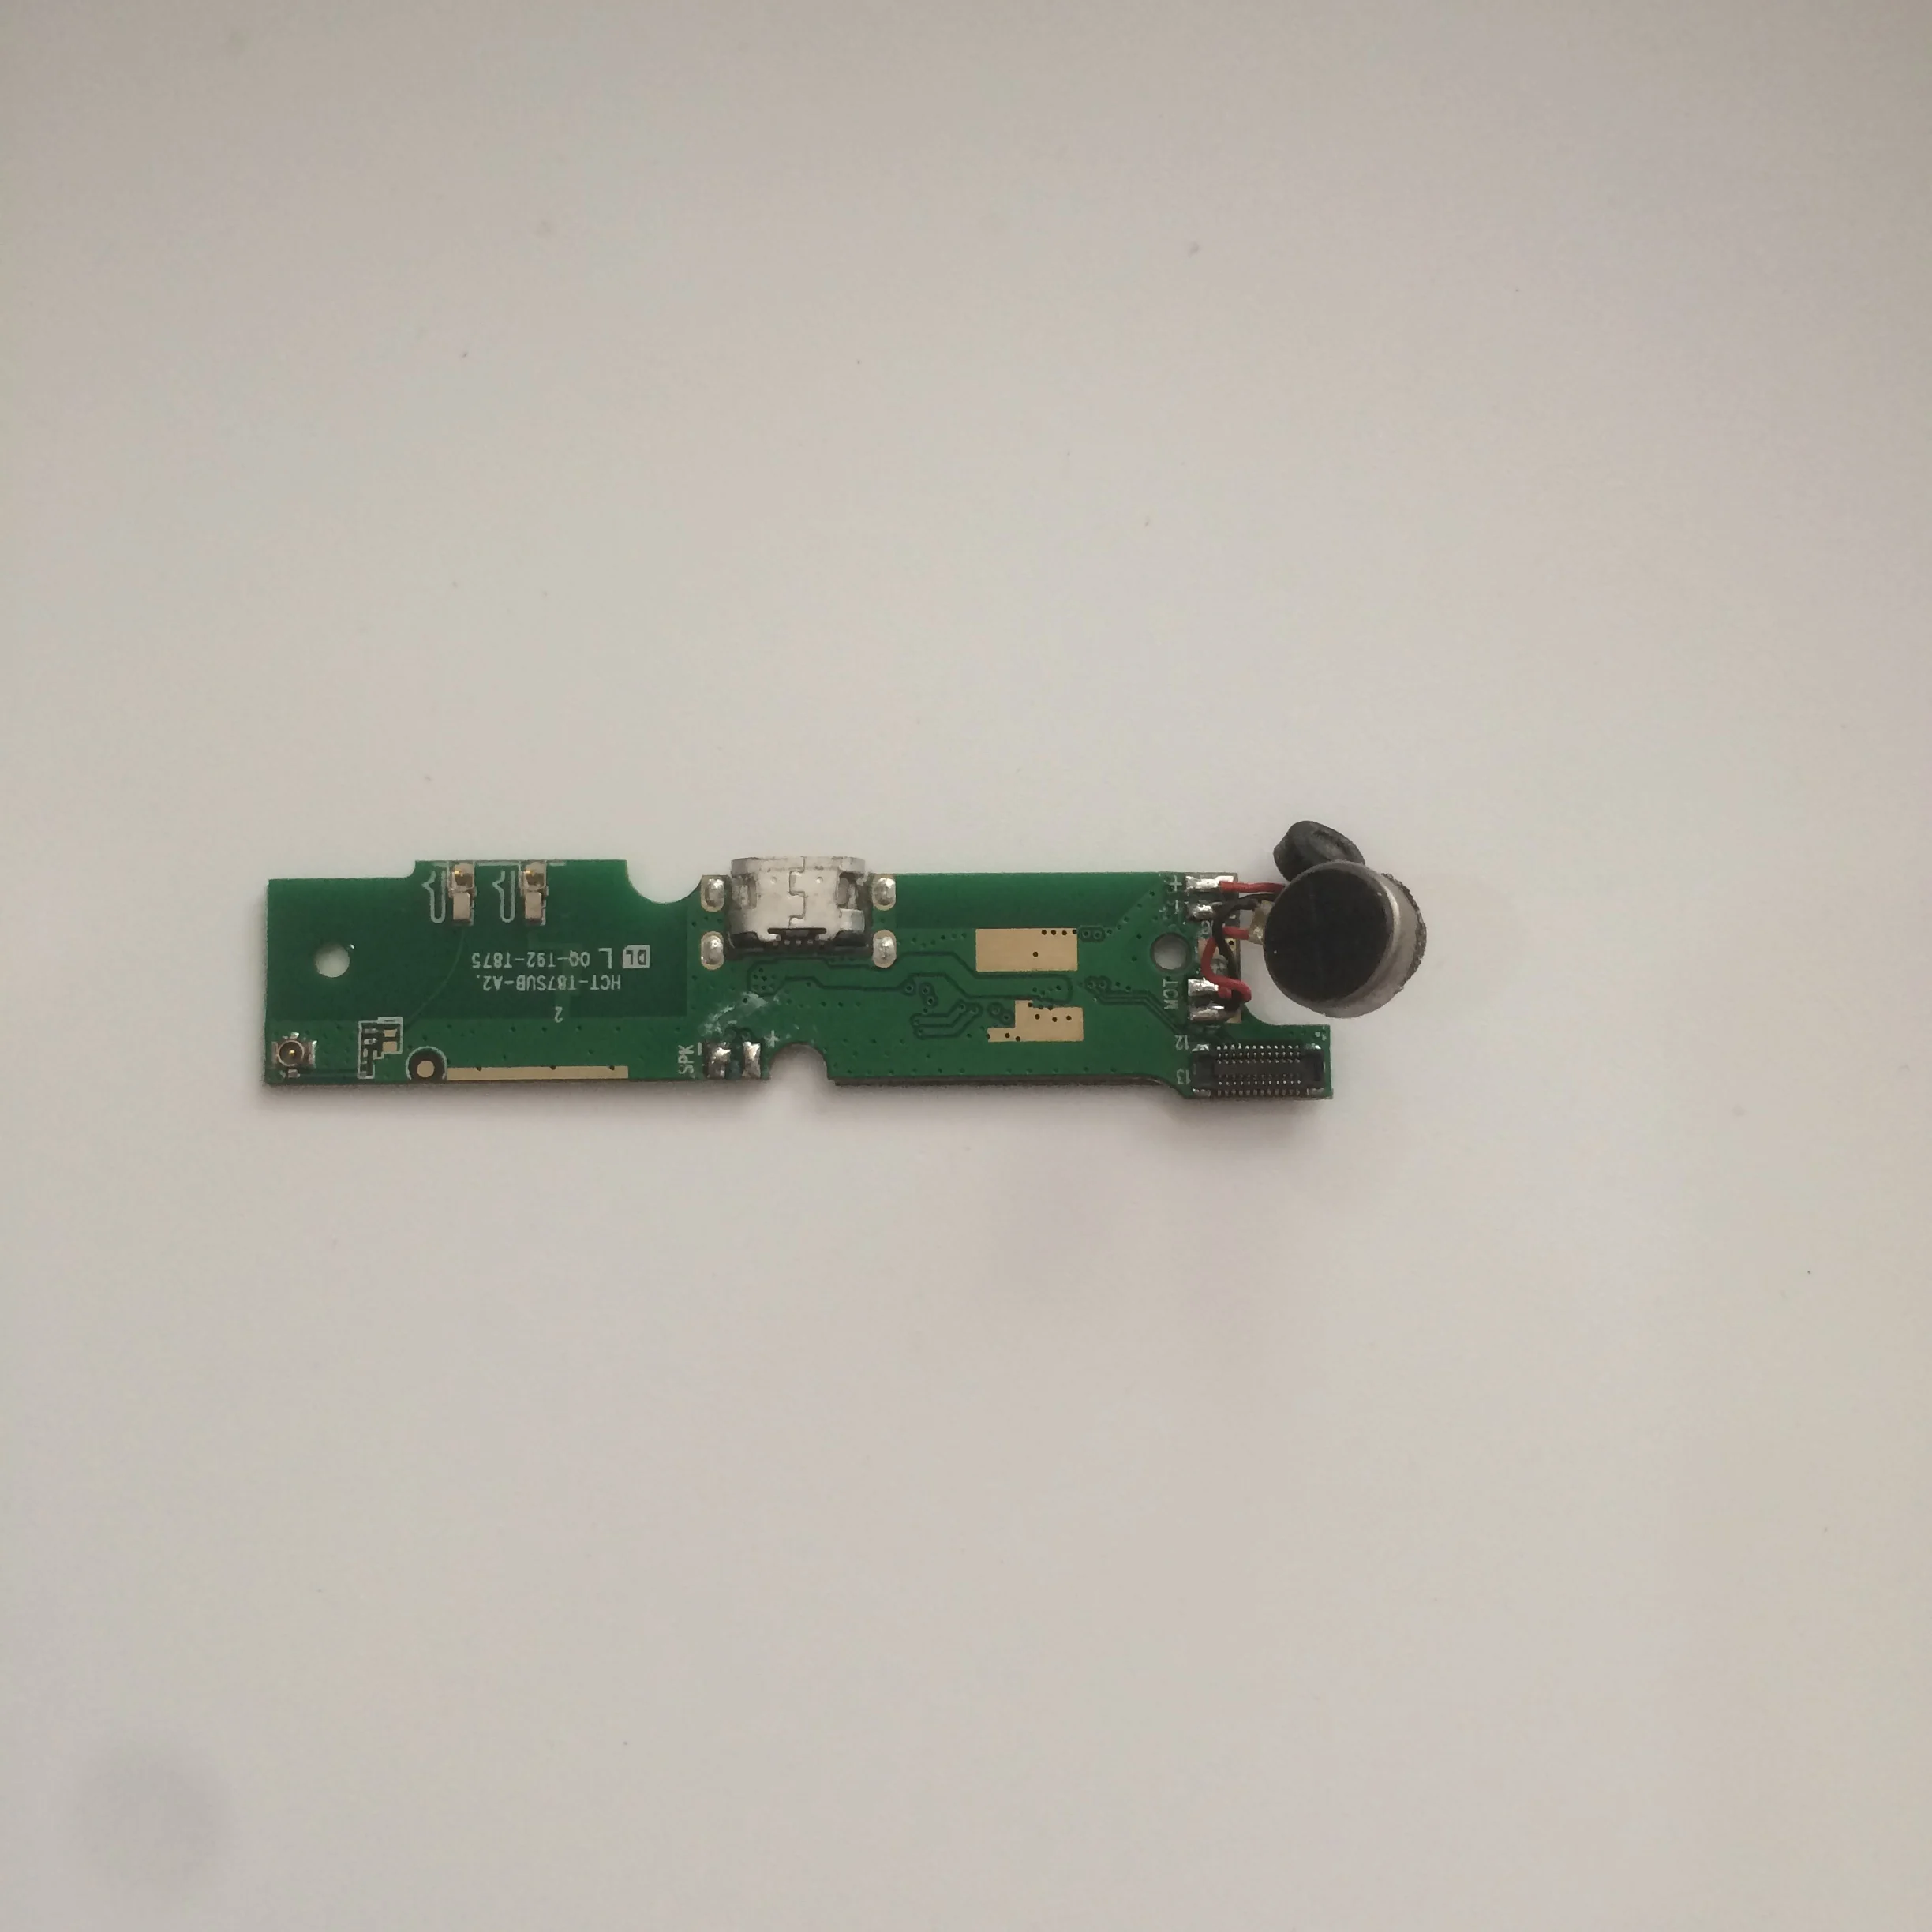 Б/у зарядная плата с разъемом USB+ вибромотор для OUKITEL K6000 MTK6735 64 бит четырехъядерный 5,5 дюйма 1280x720 - Цвет: Зеленый